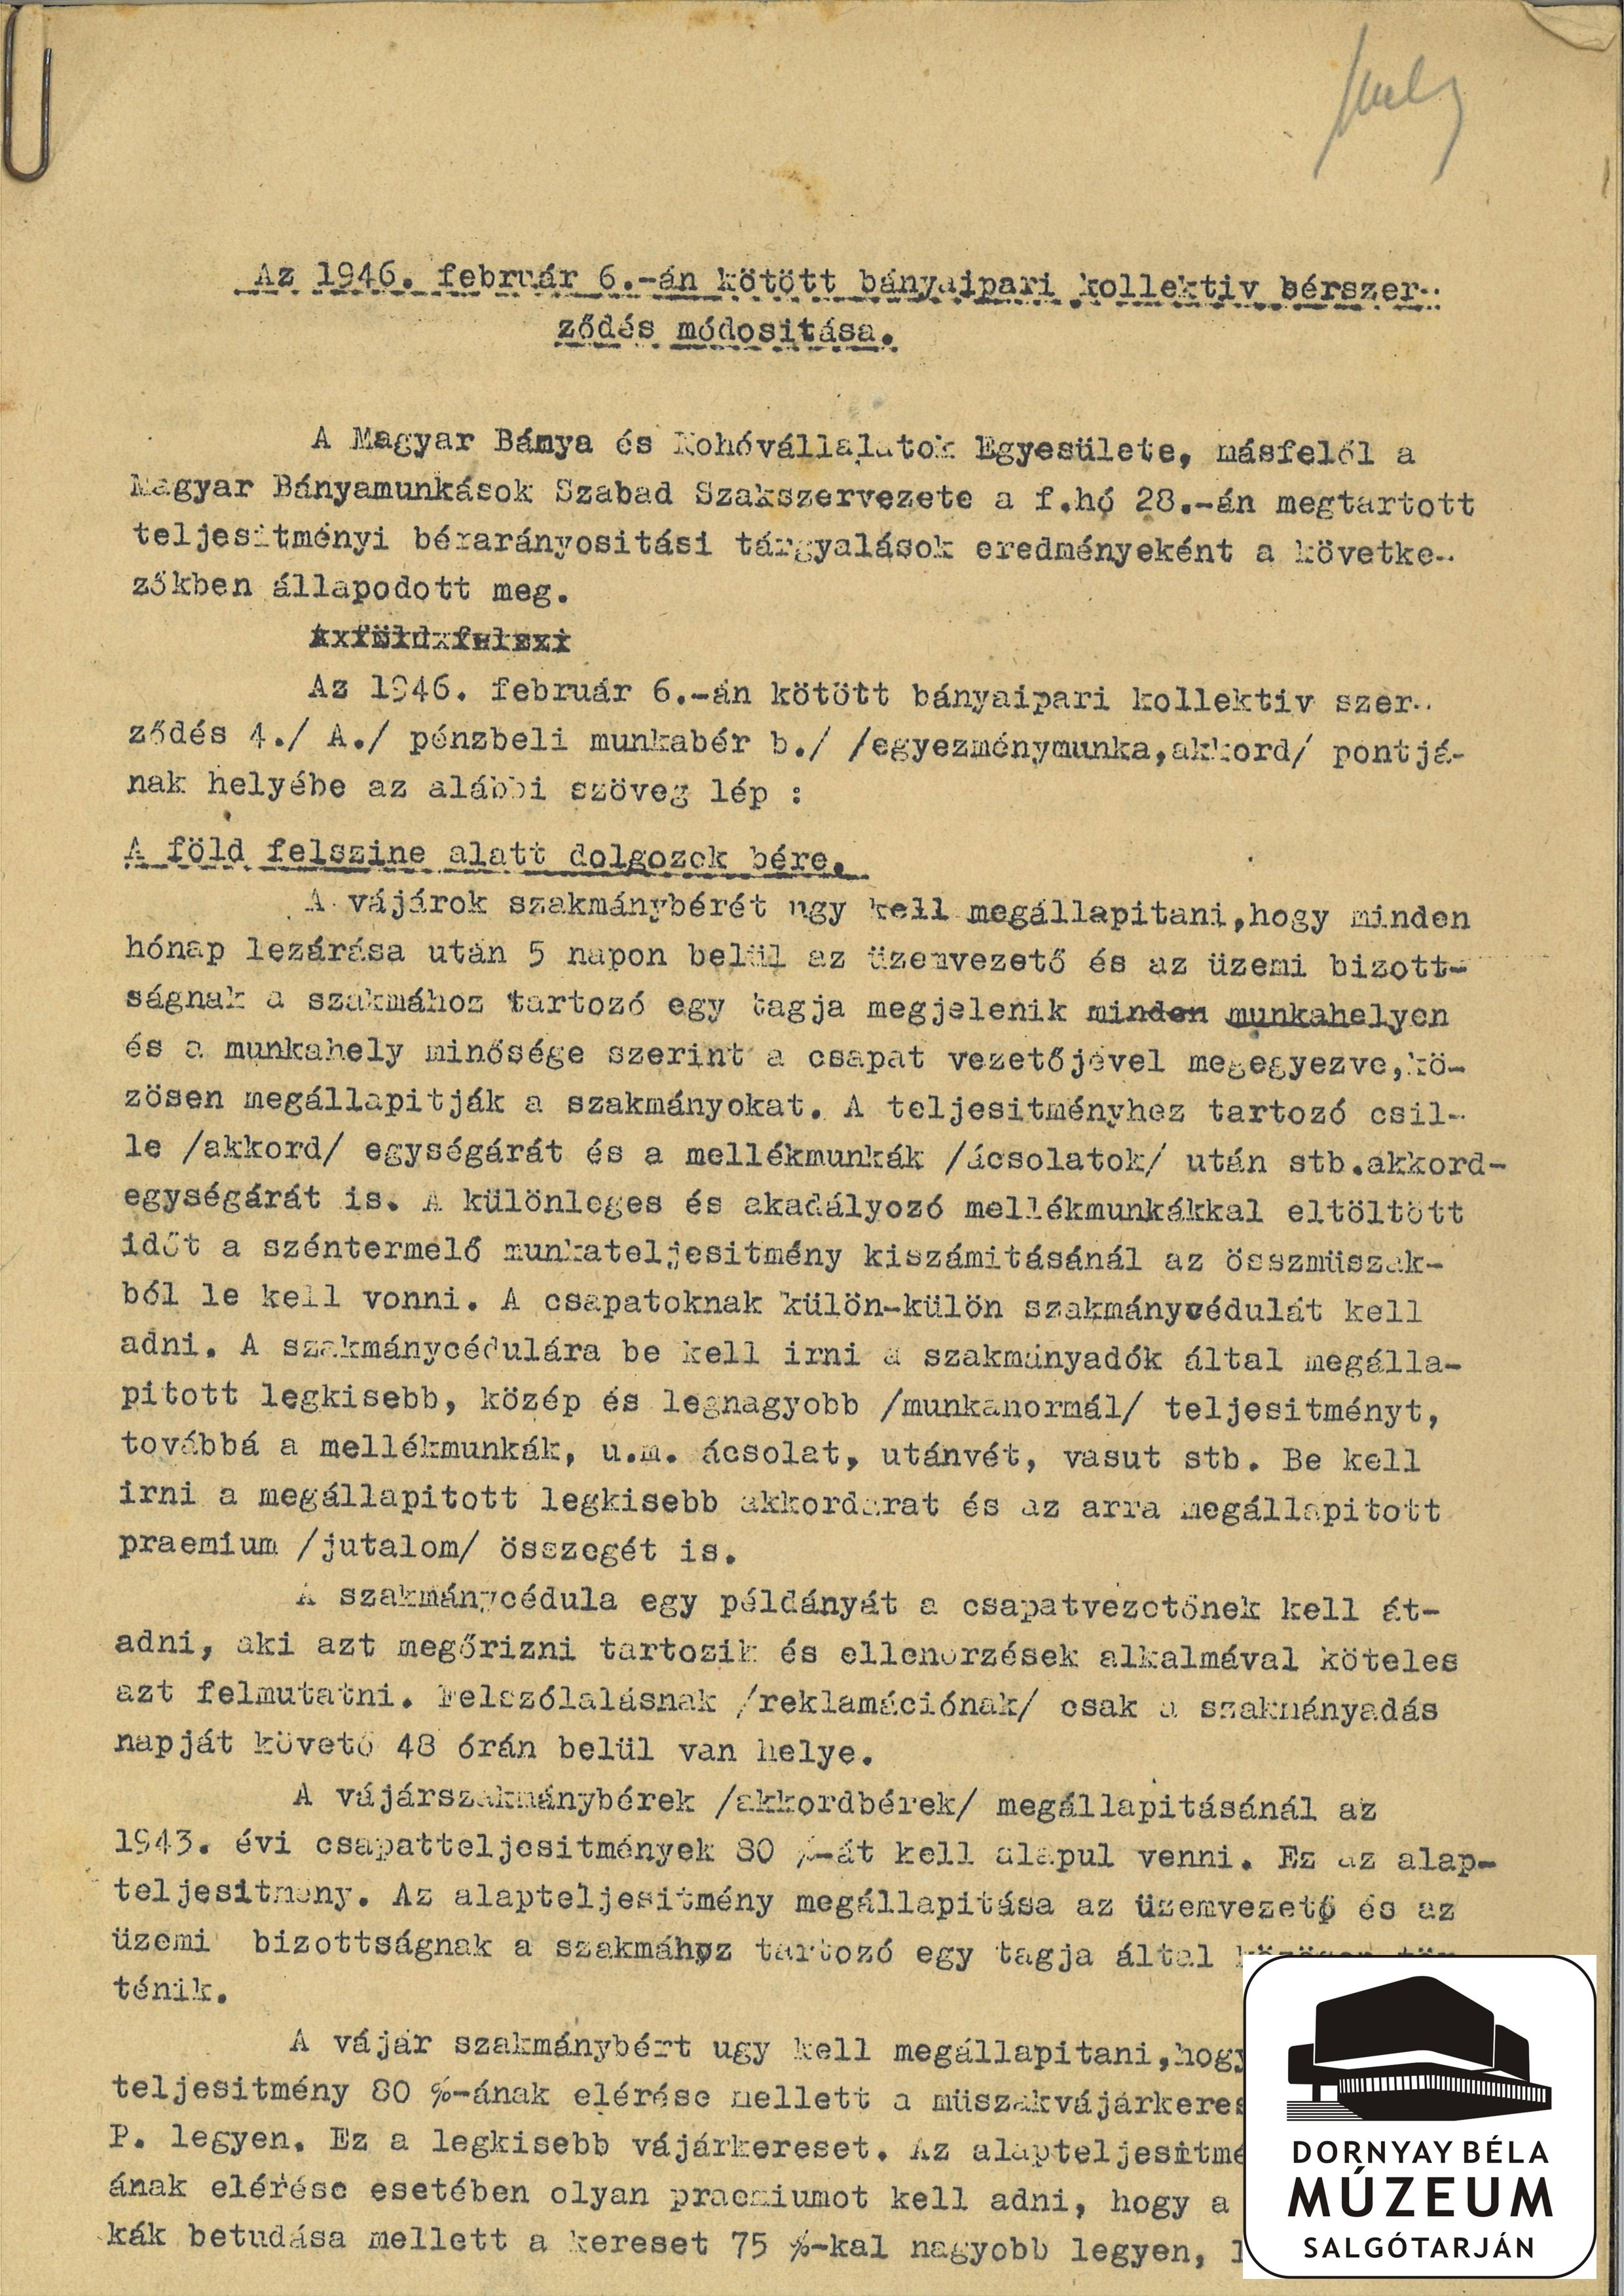 Bányaipari Kollektív bérszerződésre vonatkozó megállapodások (Dornyay Béla Múzeum, Salgótarján CC BY-NC-SA)